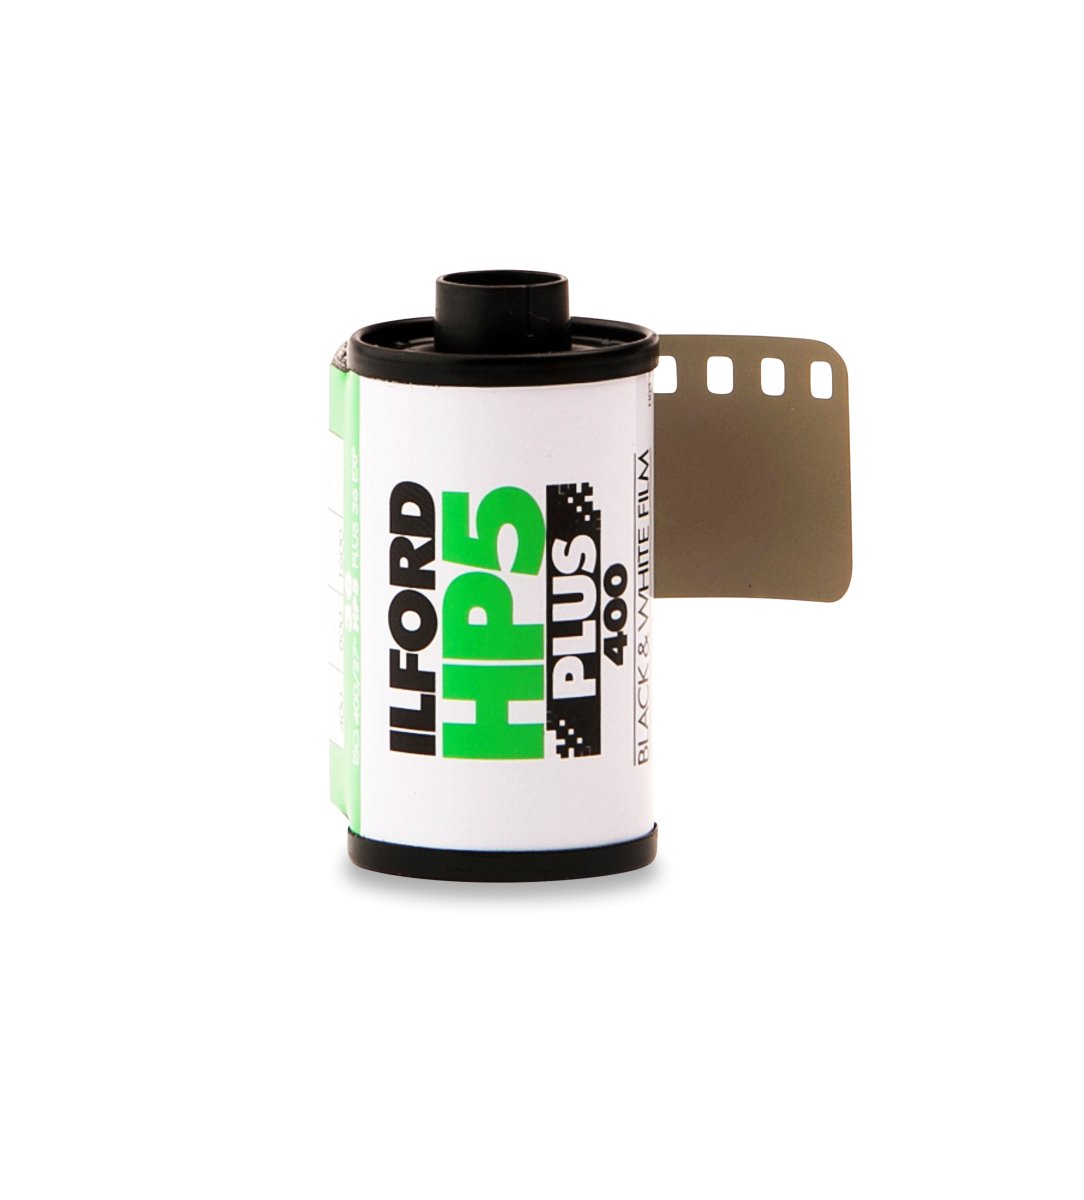 Ilford HP5 400 - 35mm - 36 exposure - Single Roll (No Box) - Rewind Photo Lab - Ilford